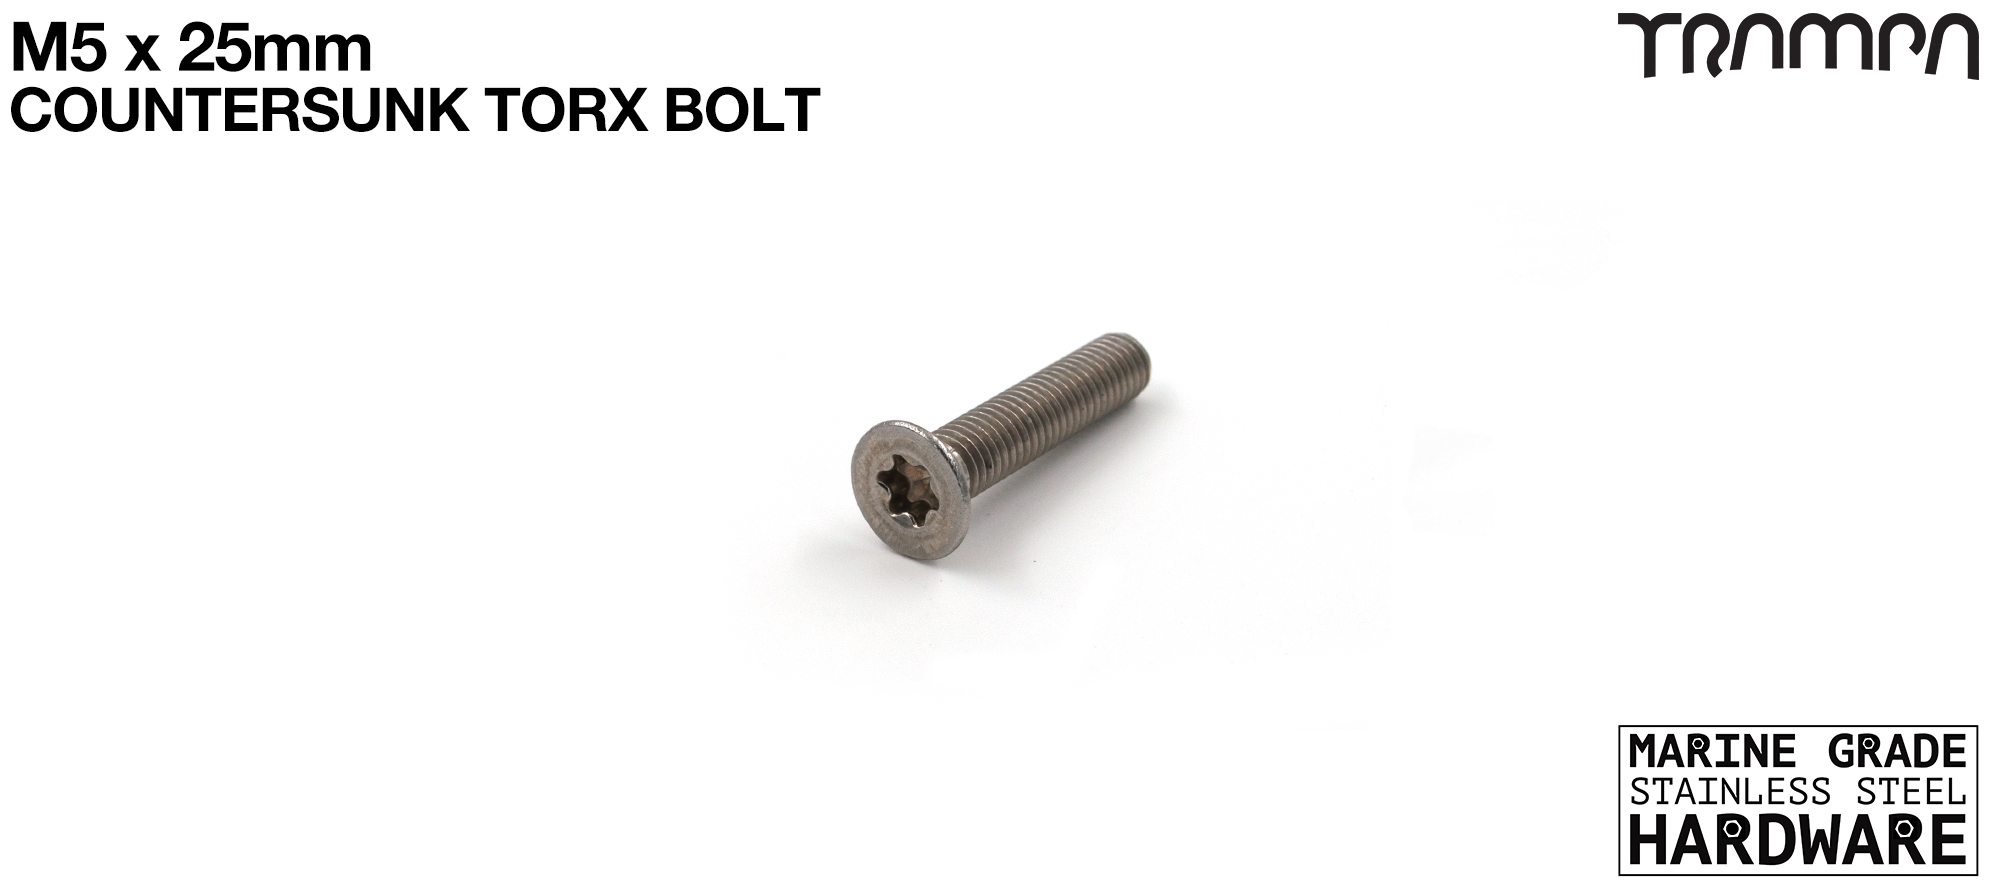 M5 x 25mm TORX Countersunk Bolt 